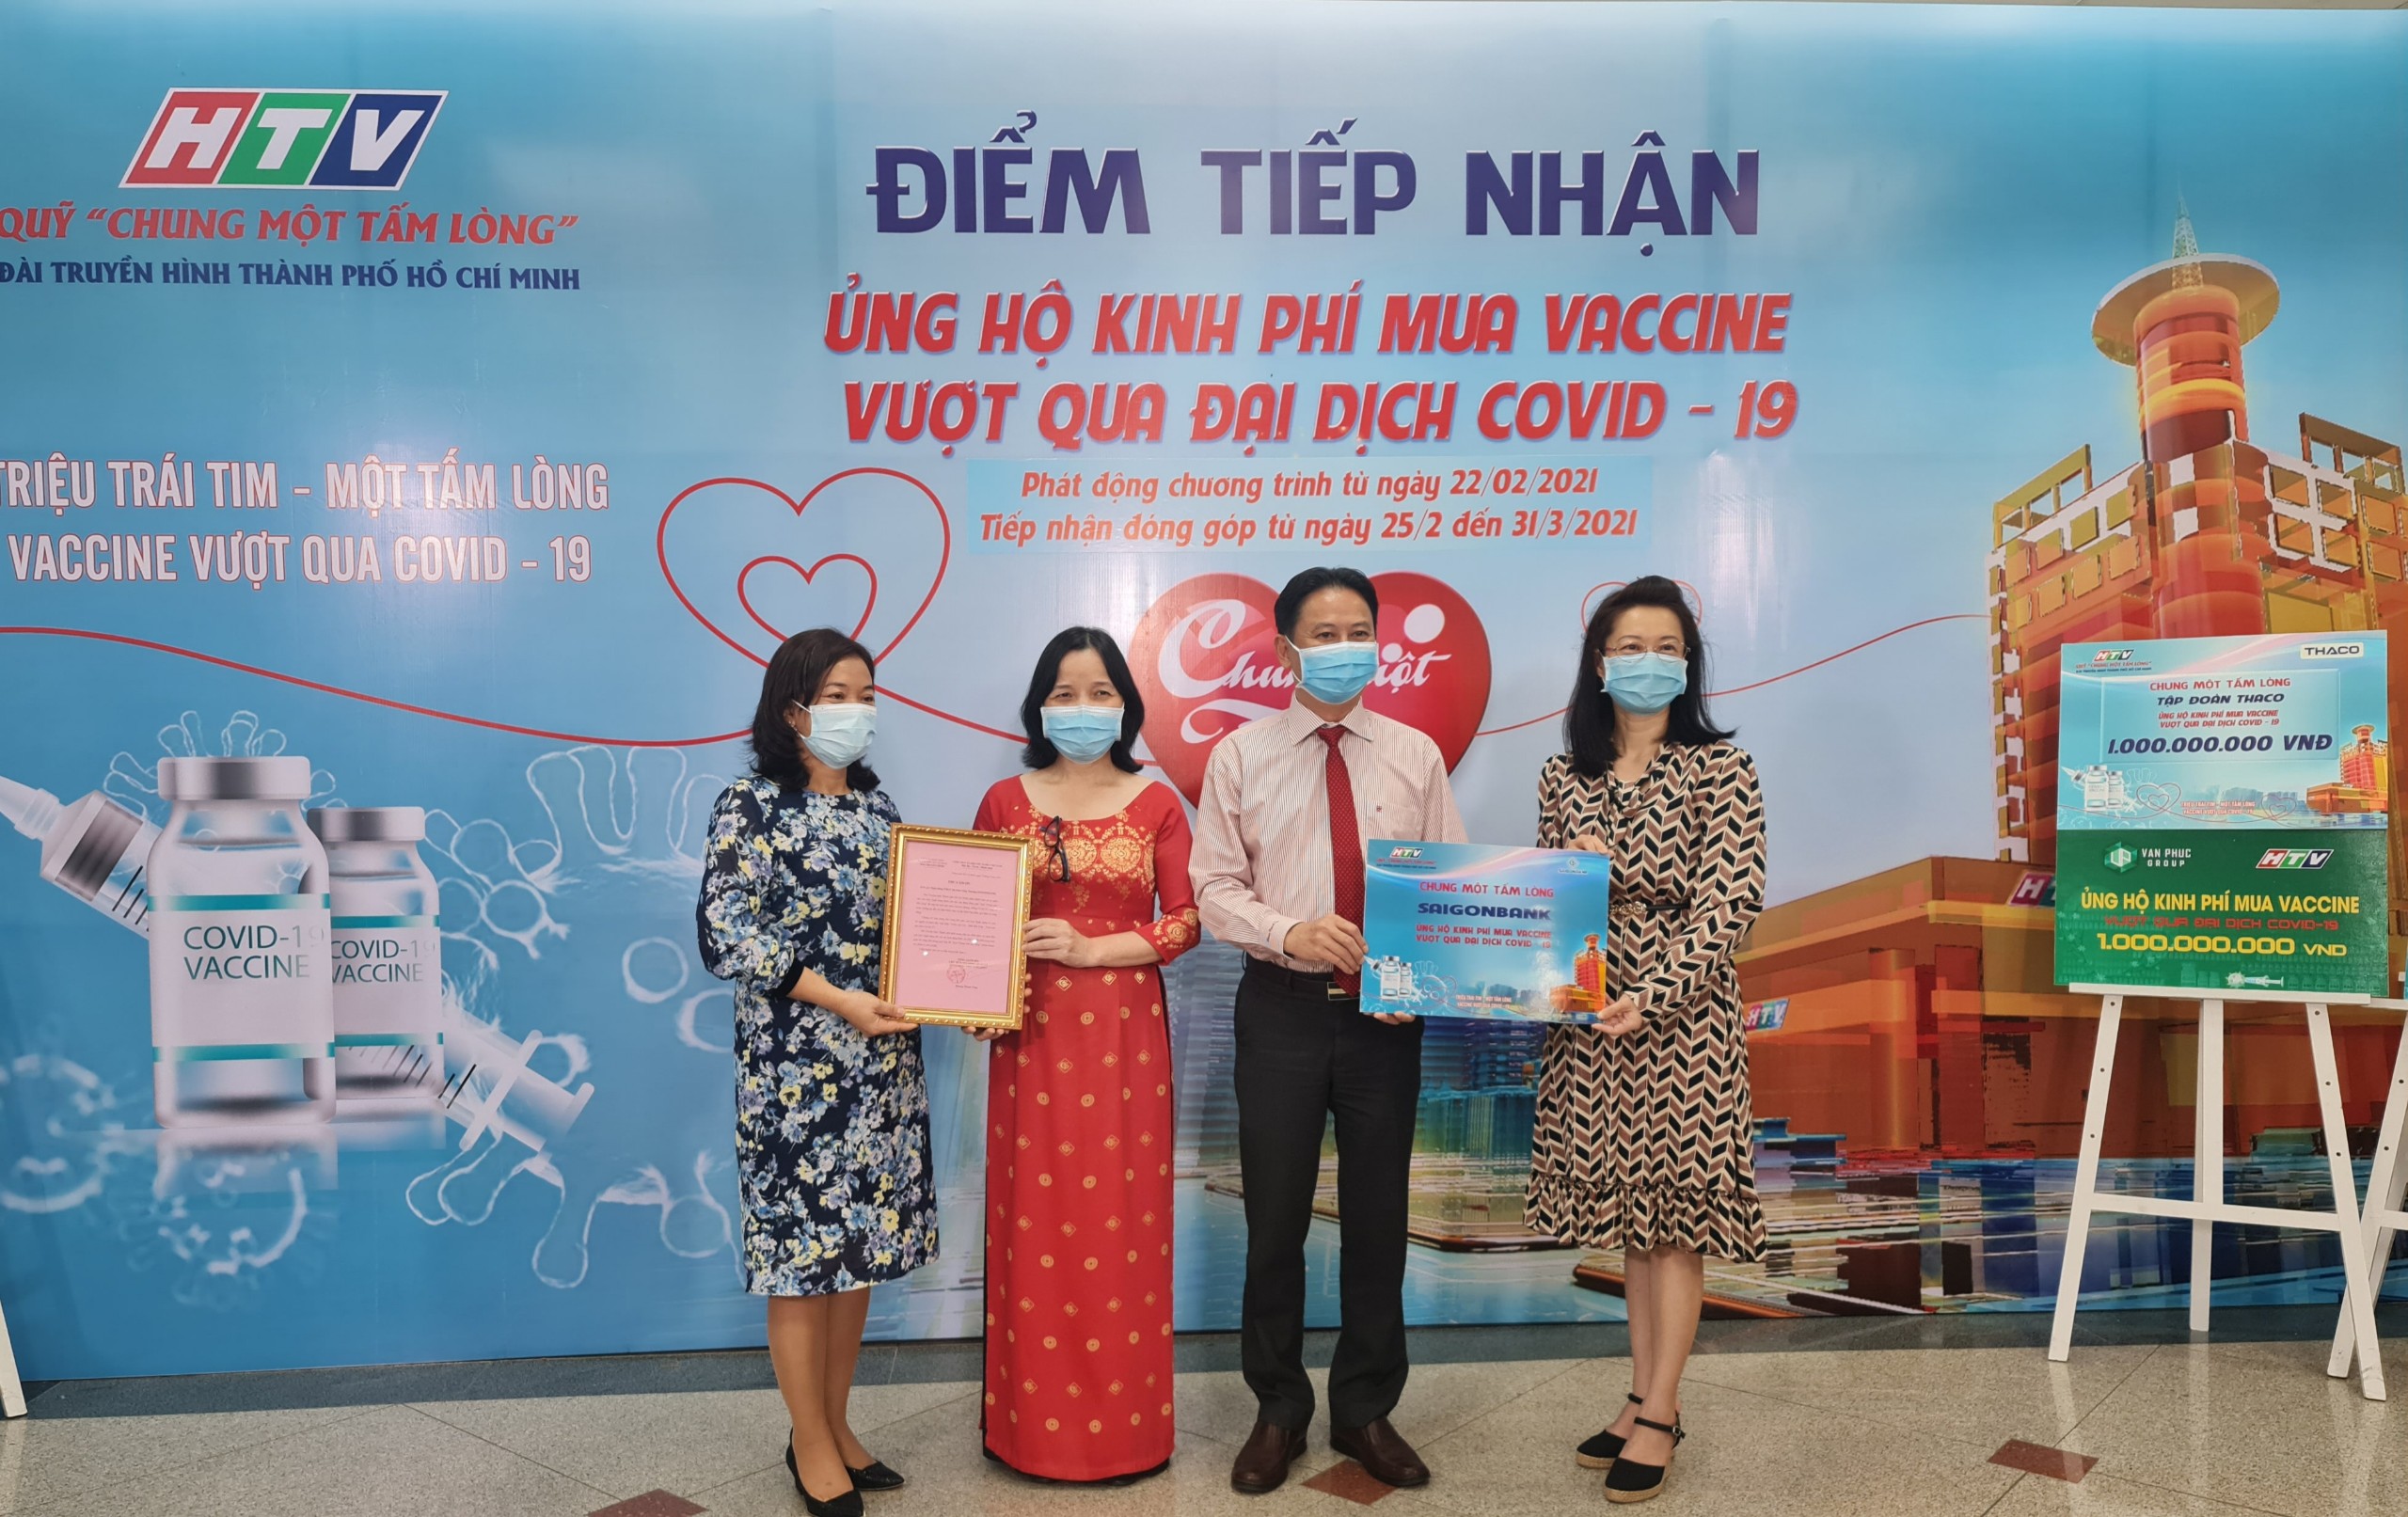 Ông Phạm Hoàng Hồng Thịnh – Phó Tổng Giám đốc SAIGONBANK trao tặng ủng hộ Quỹ “Chung một tấm lòng”